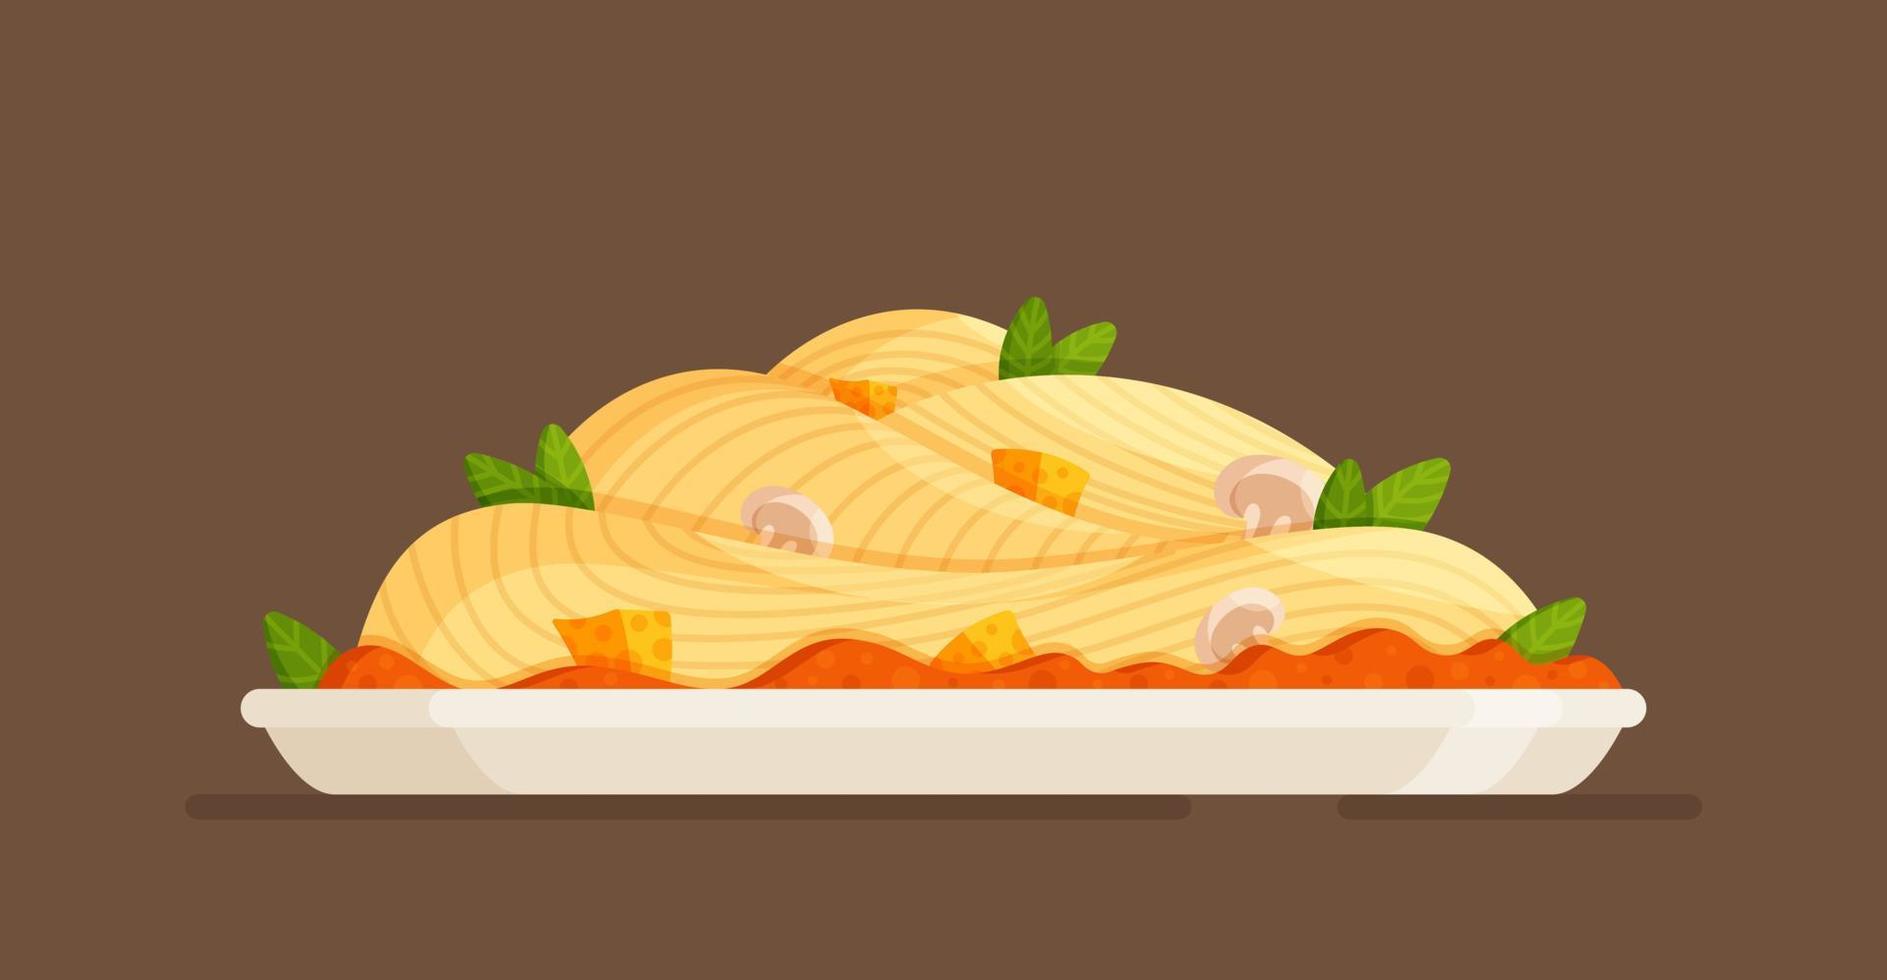 nationaal, traditioneel schotel van Italië. vector illustratie van een groot bord van heerlijk pasta. heet lunch.